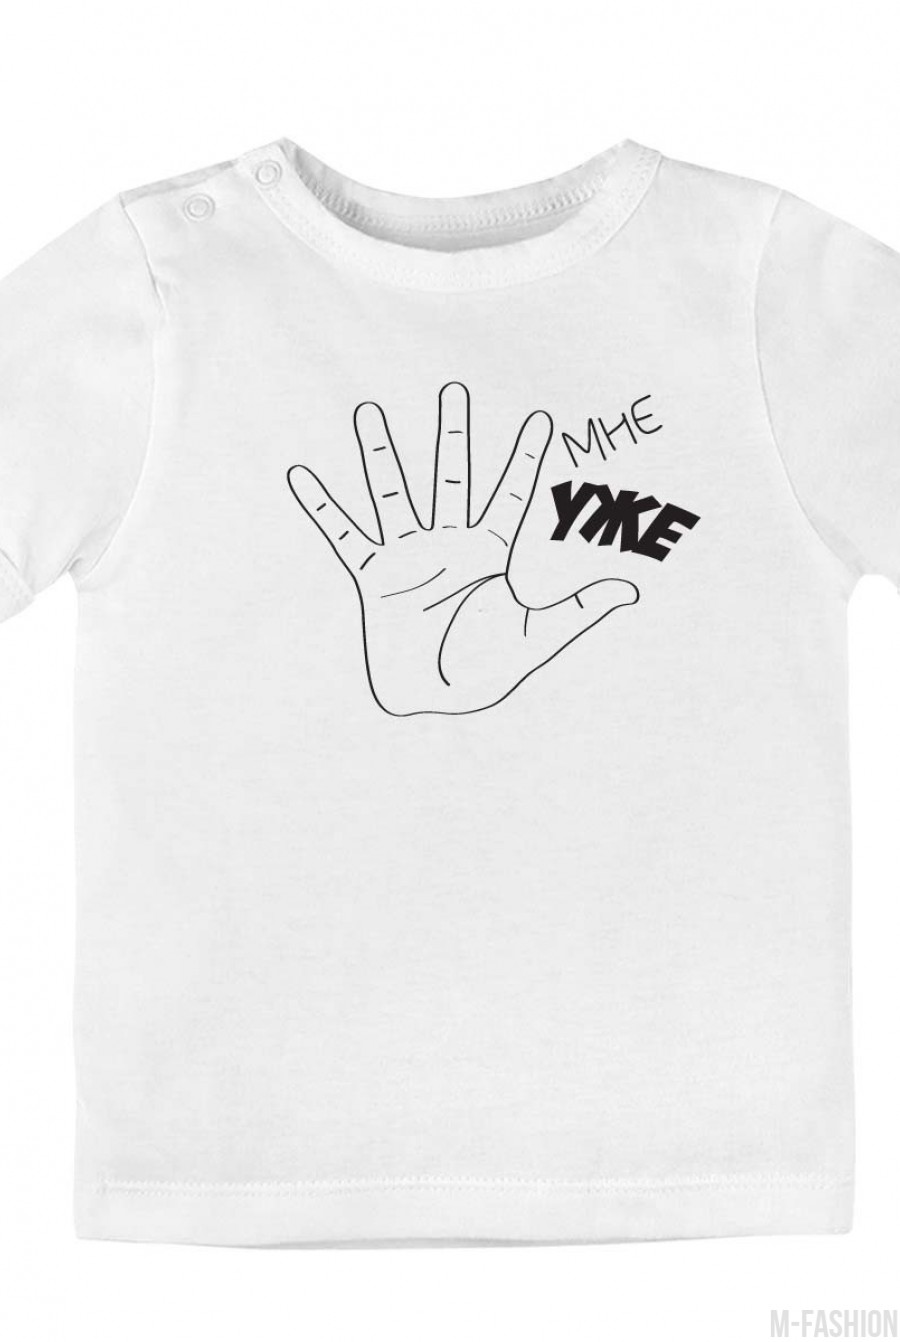 Хлопковая футболка с возможностью индивидуальной печати принта (1-5) из пальцев- Фото 6